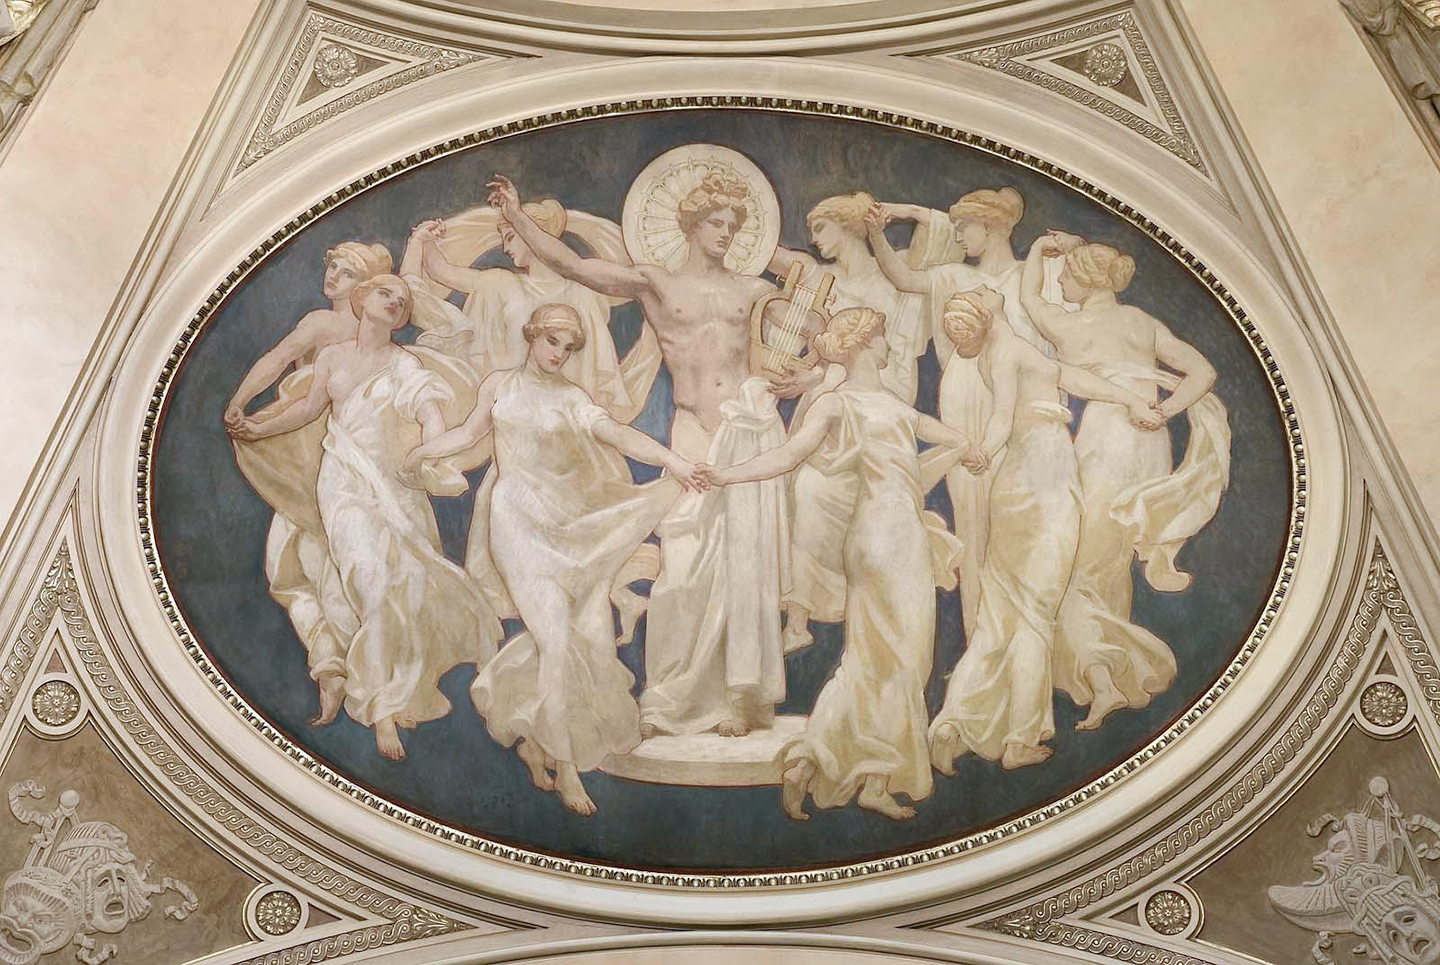 Bức tranh “Apollo and the Muses” (Thần Apollo và Các Nữ Thần Muse) của họa sỹ John Singer Sargent, năm 1921. Sơn dầu trên vải canvas. Bảo tàng Mỹ thuật Boston. (Ảnh: Tư liệu công cộng)